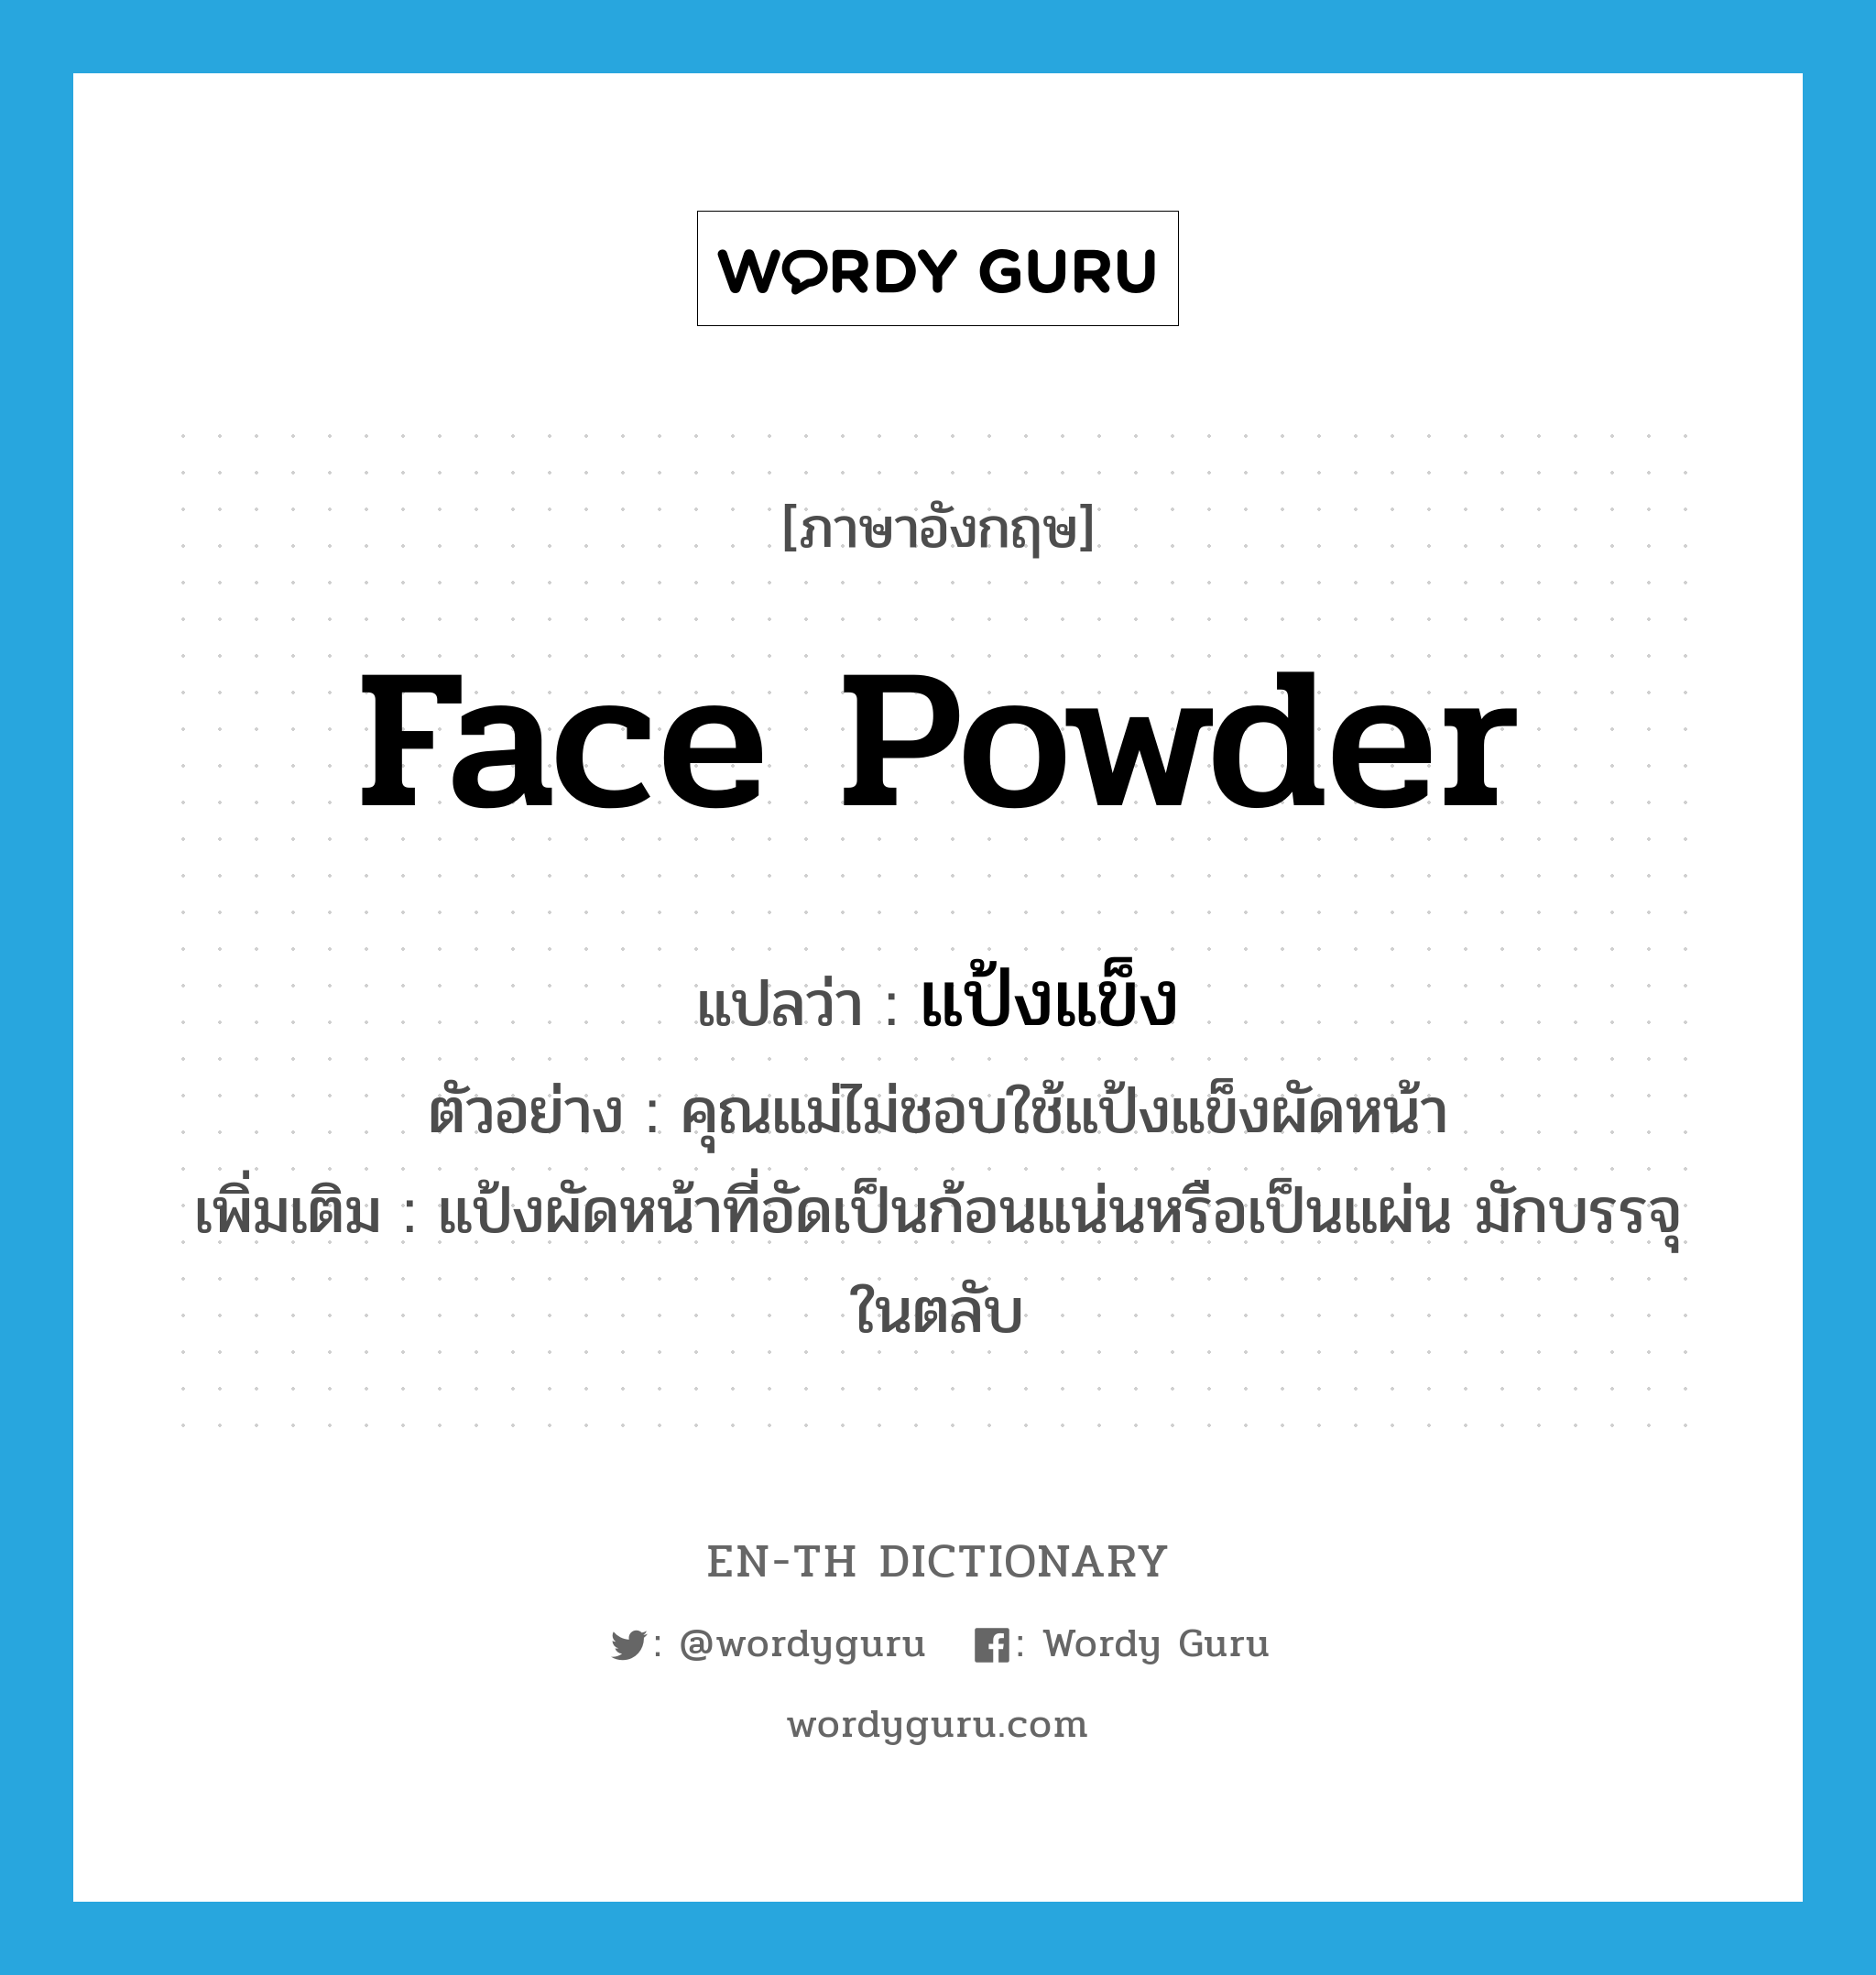 face powder แปลว่า?, คำศัพท์ภาษาอังกฤษ face powder แปลว่า แป้งแข็ง ประเภท N ตัวอย่าง คุณแม่ไม่ชอบใช้แป้งแข็งผัดหน้า เพิ่มเติม แป้งผัดหน้าที่อัดเป็นก้อนแน่นหรือเป็นแผ่น มักบรรจุในตลับ หมวด N